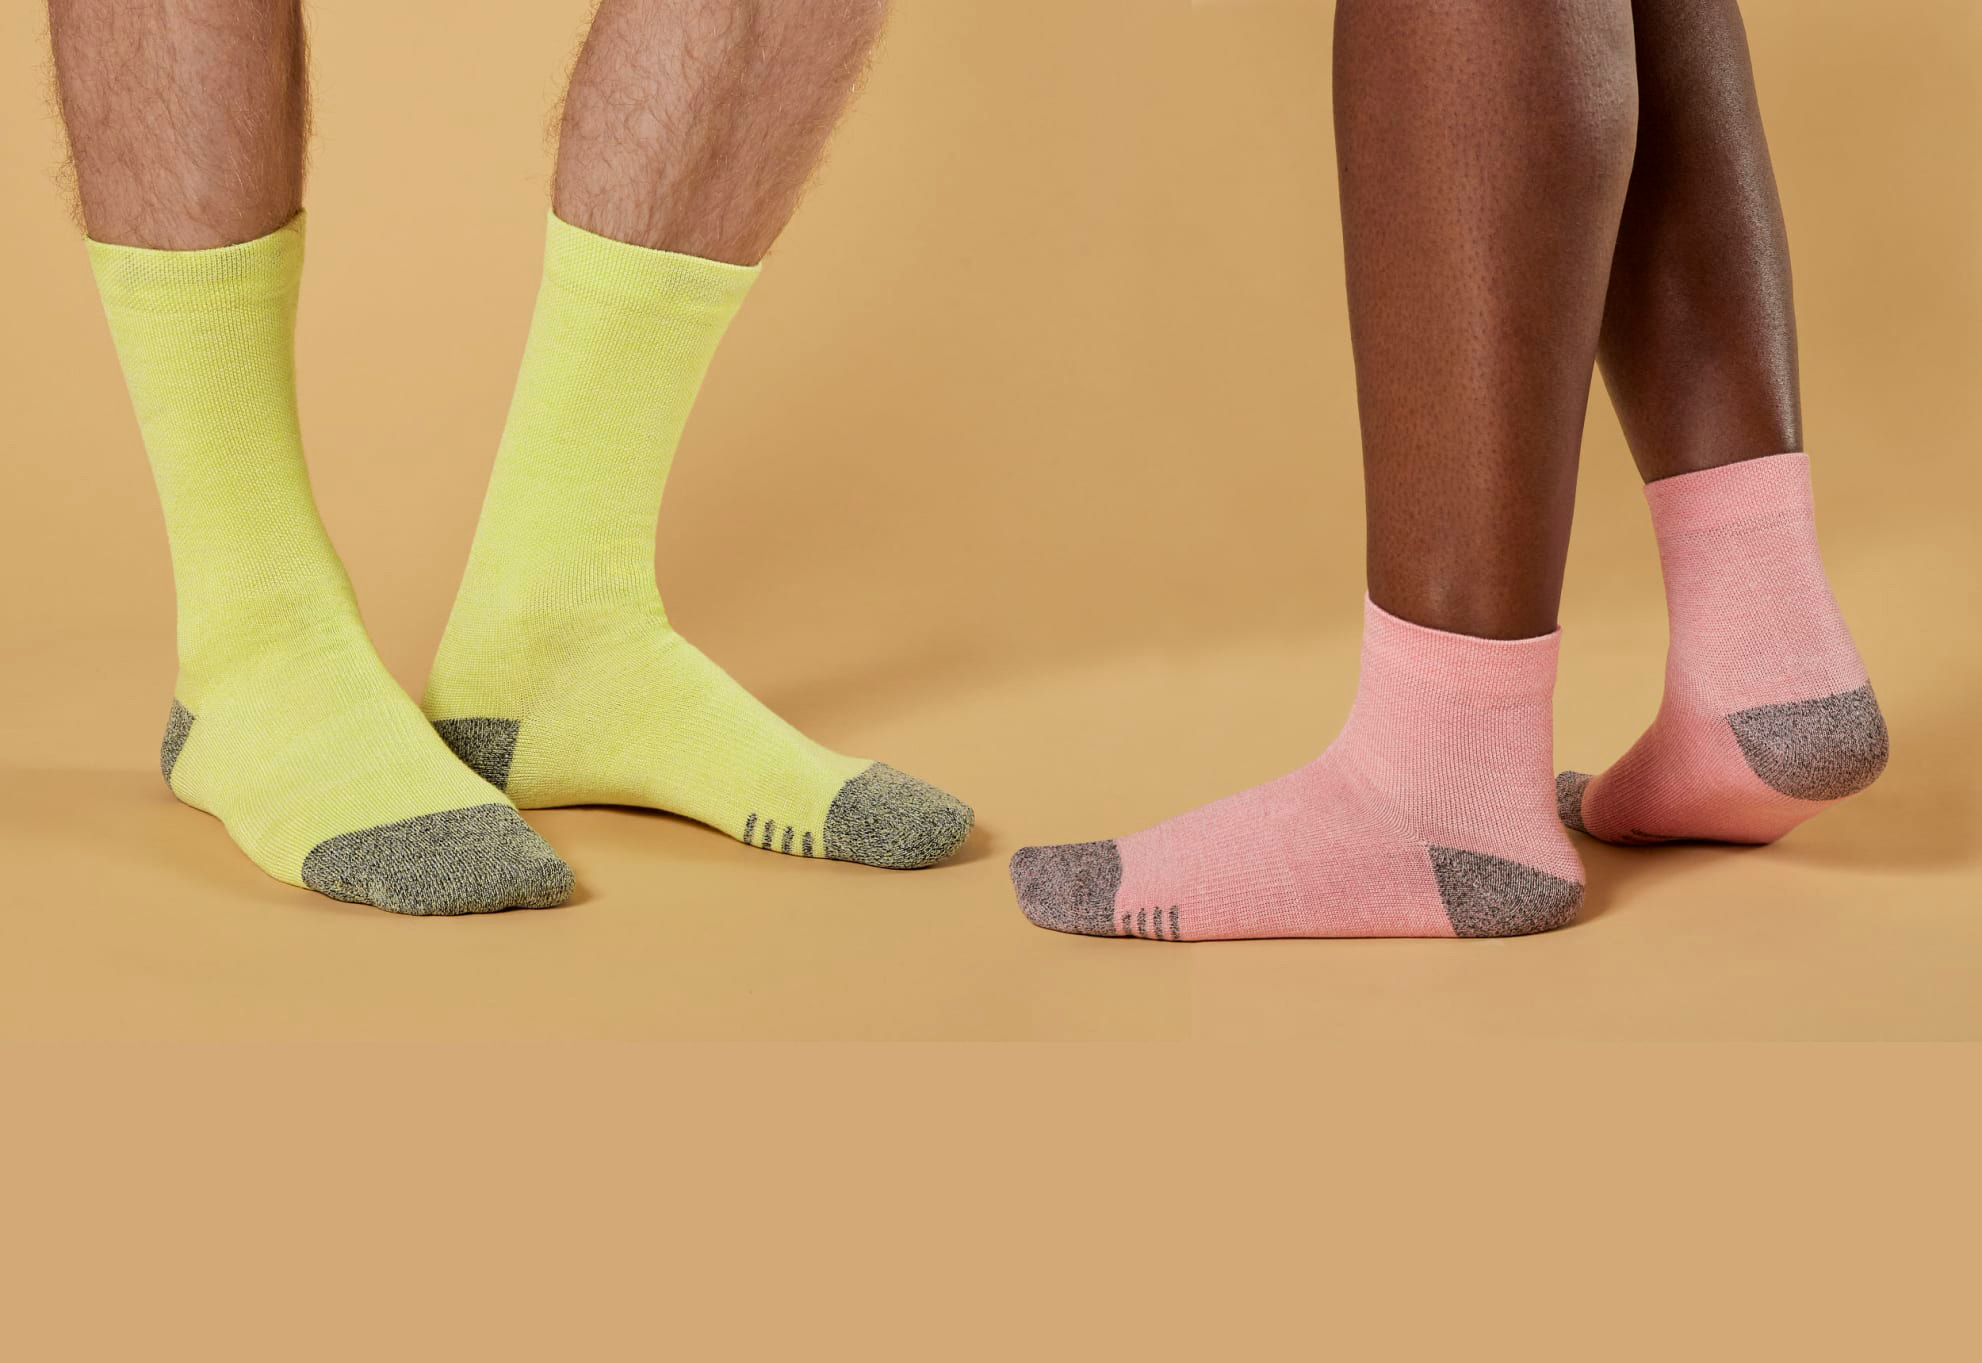 Allbirds introduces socks you can pair 